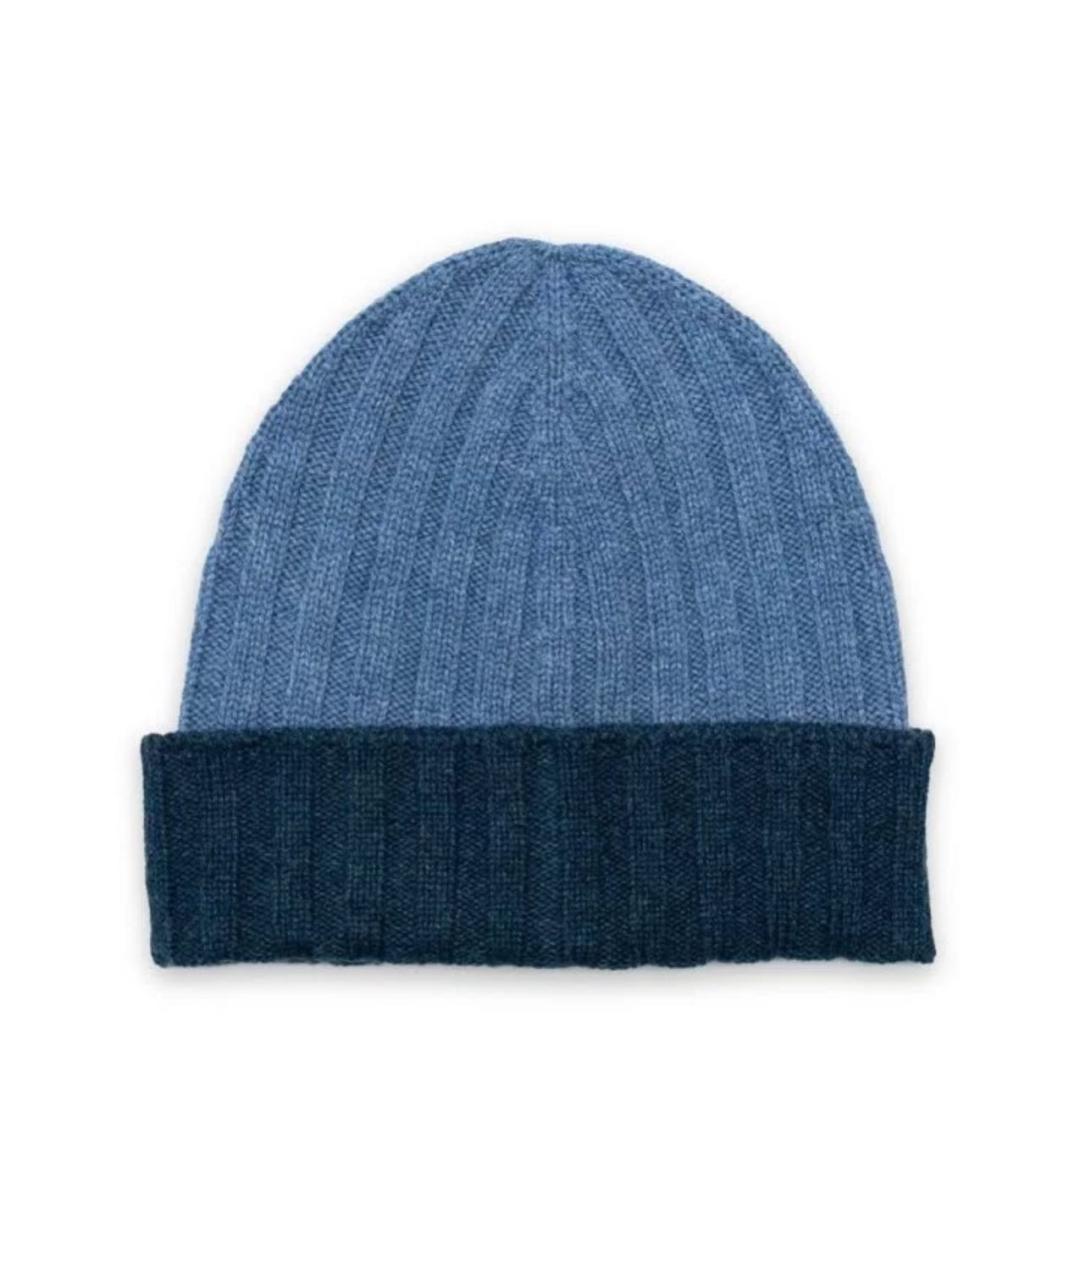 GRAN SASSO Синяя кашемировая шапка, фото 1